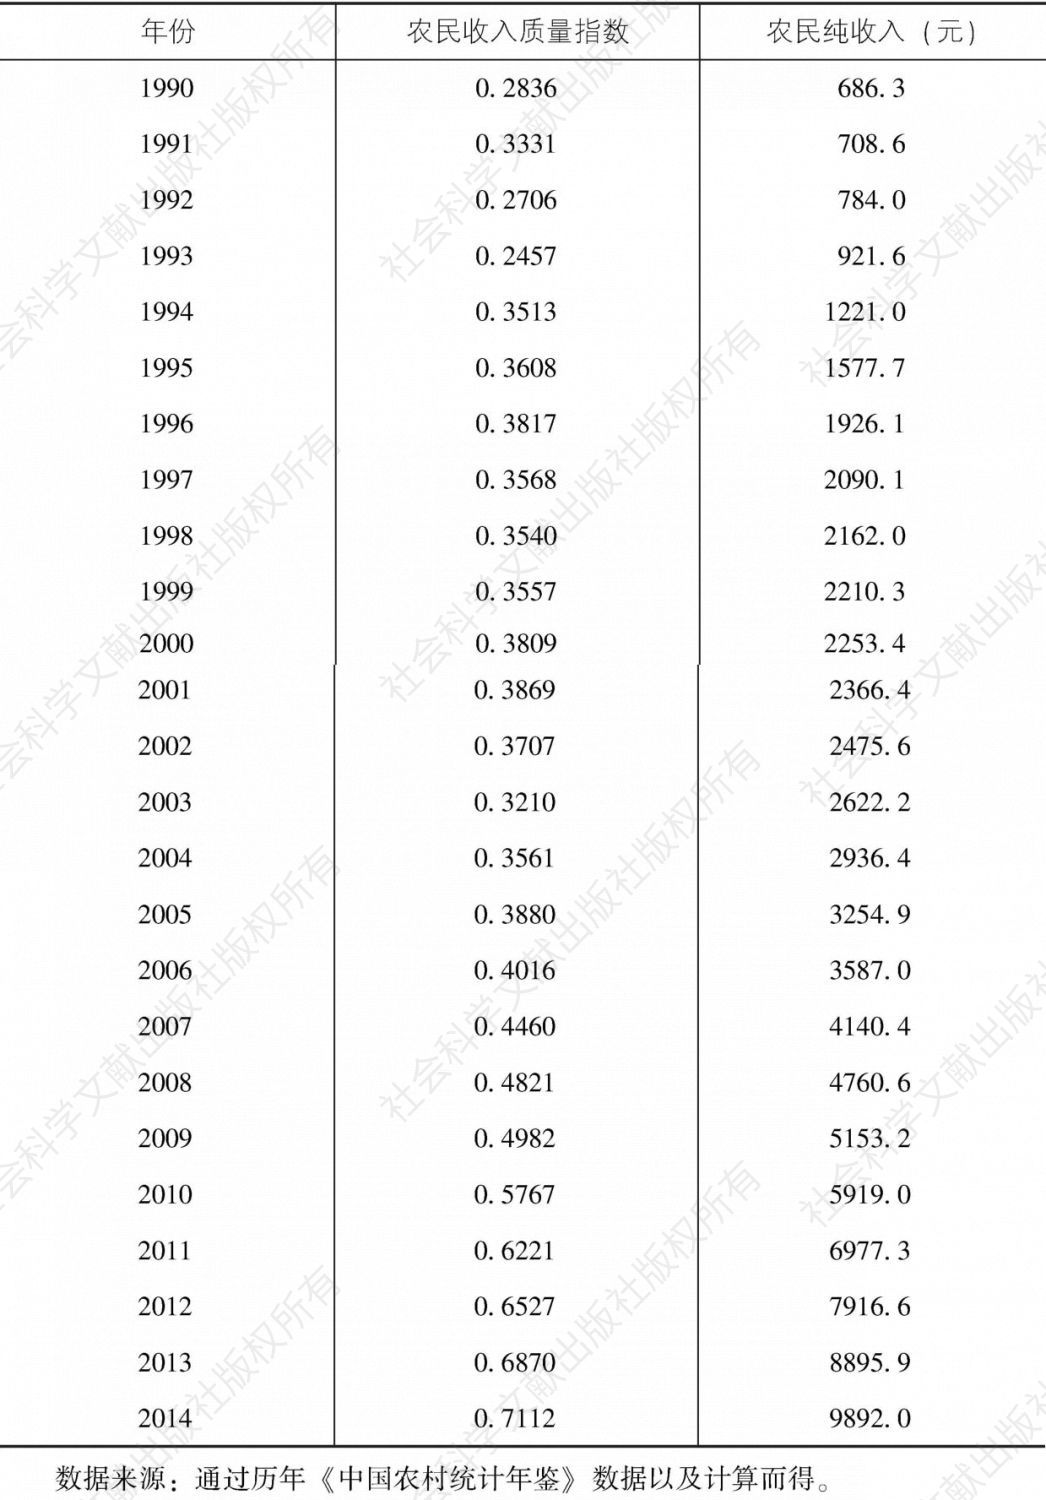 表5-2 1990年至2014年我国农民收入质量指数及纯收入